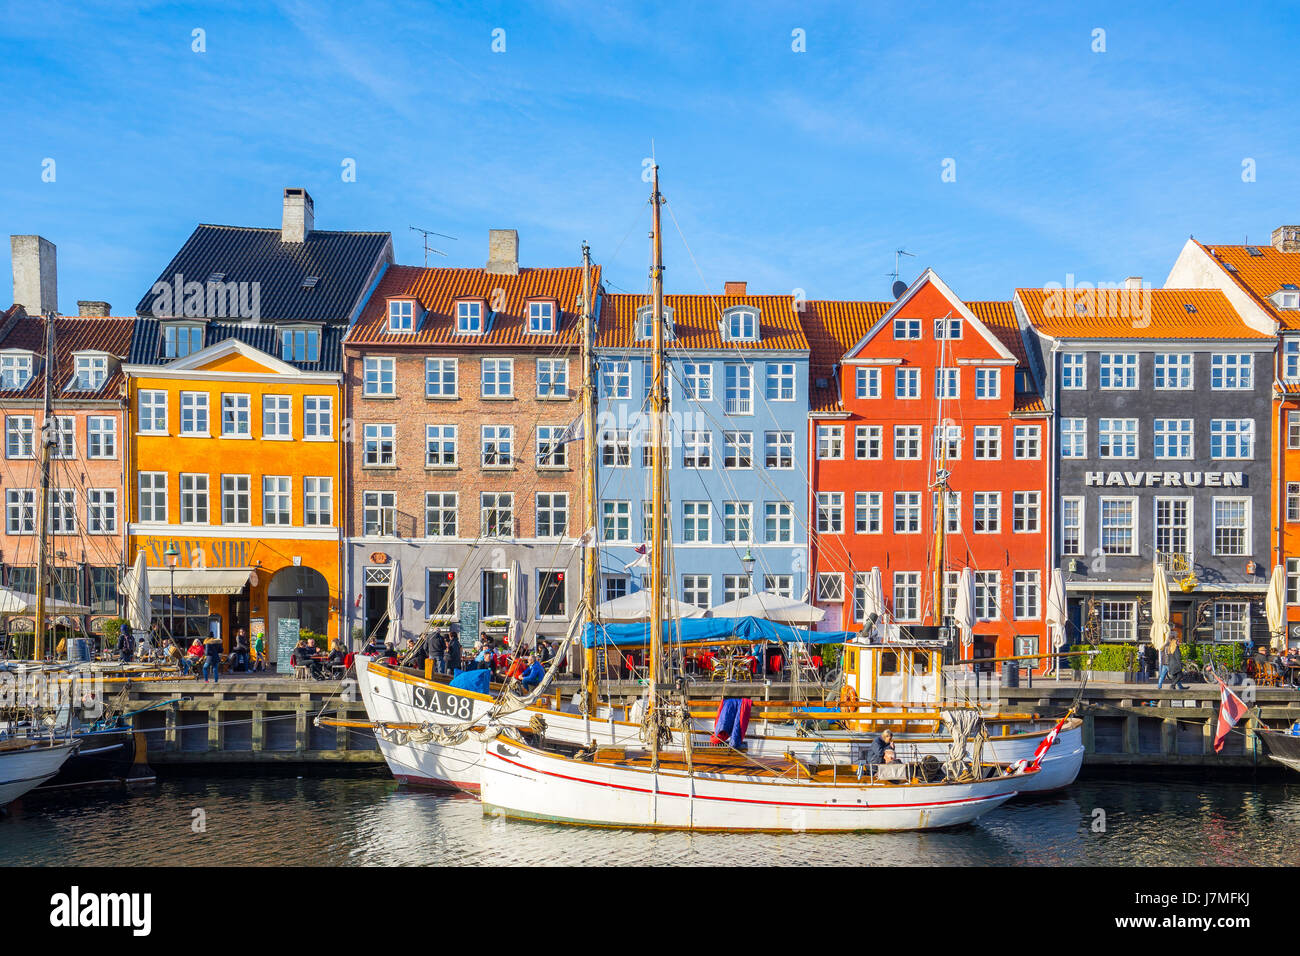 Kopenhagen, Dänemark - 1. Mai 2017: Nyhavn ist ein aus dem 17. Jahrhundert am Wasser, Kanal und Unterhaltung Bezirk in Kopenhagen, Dänemark. Stockfoto